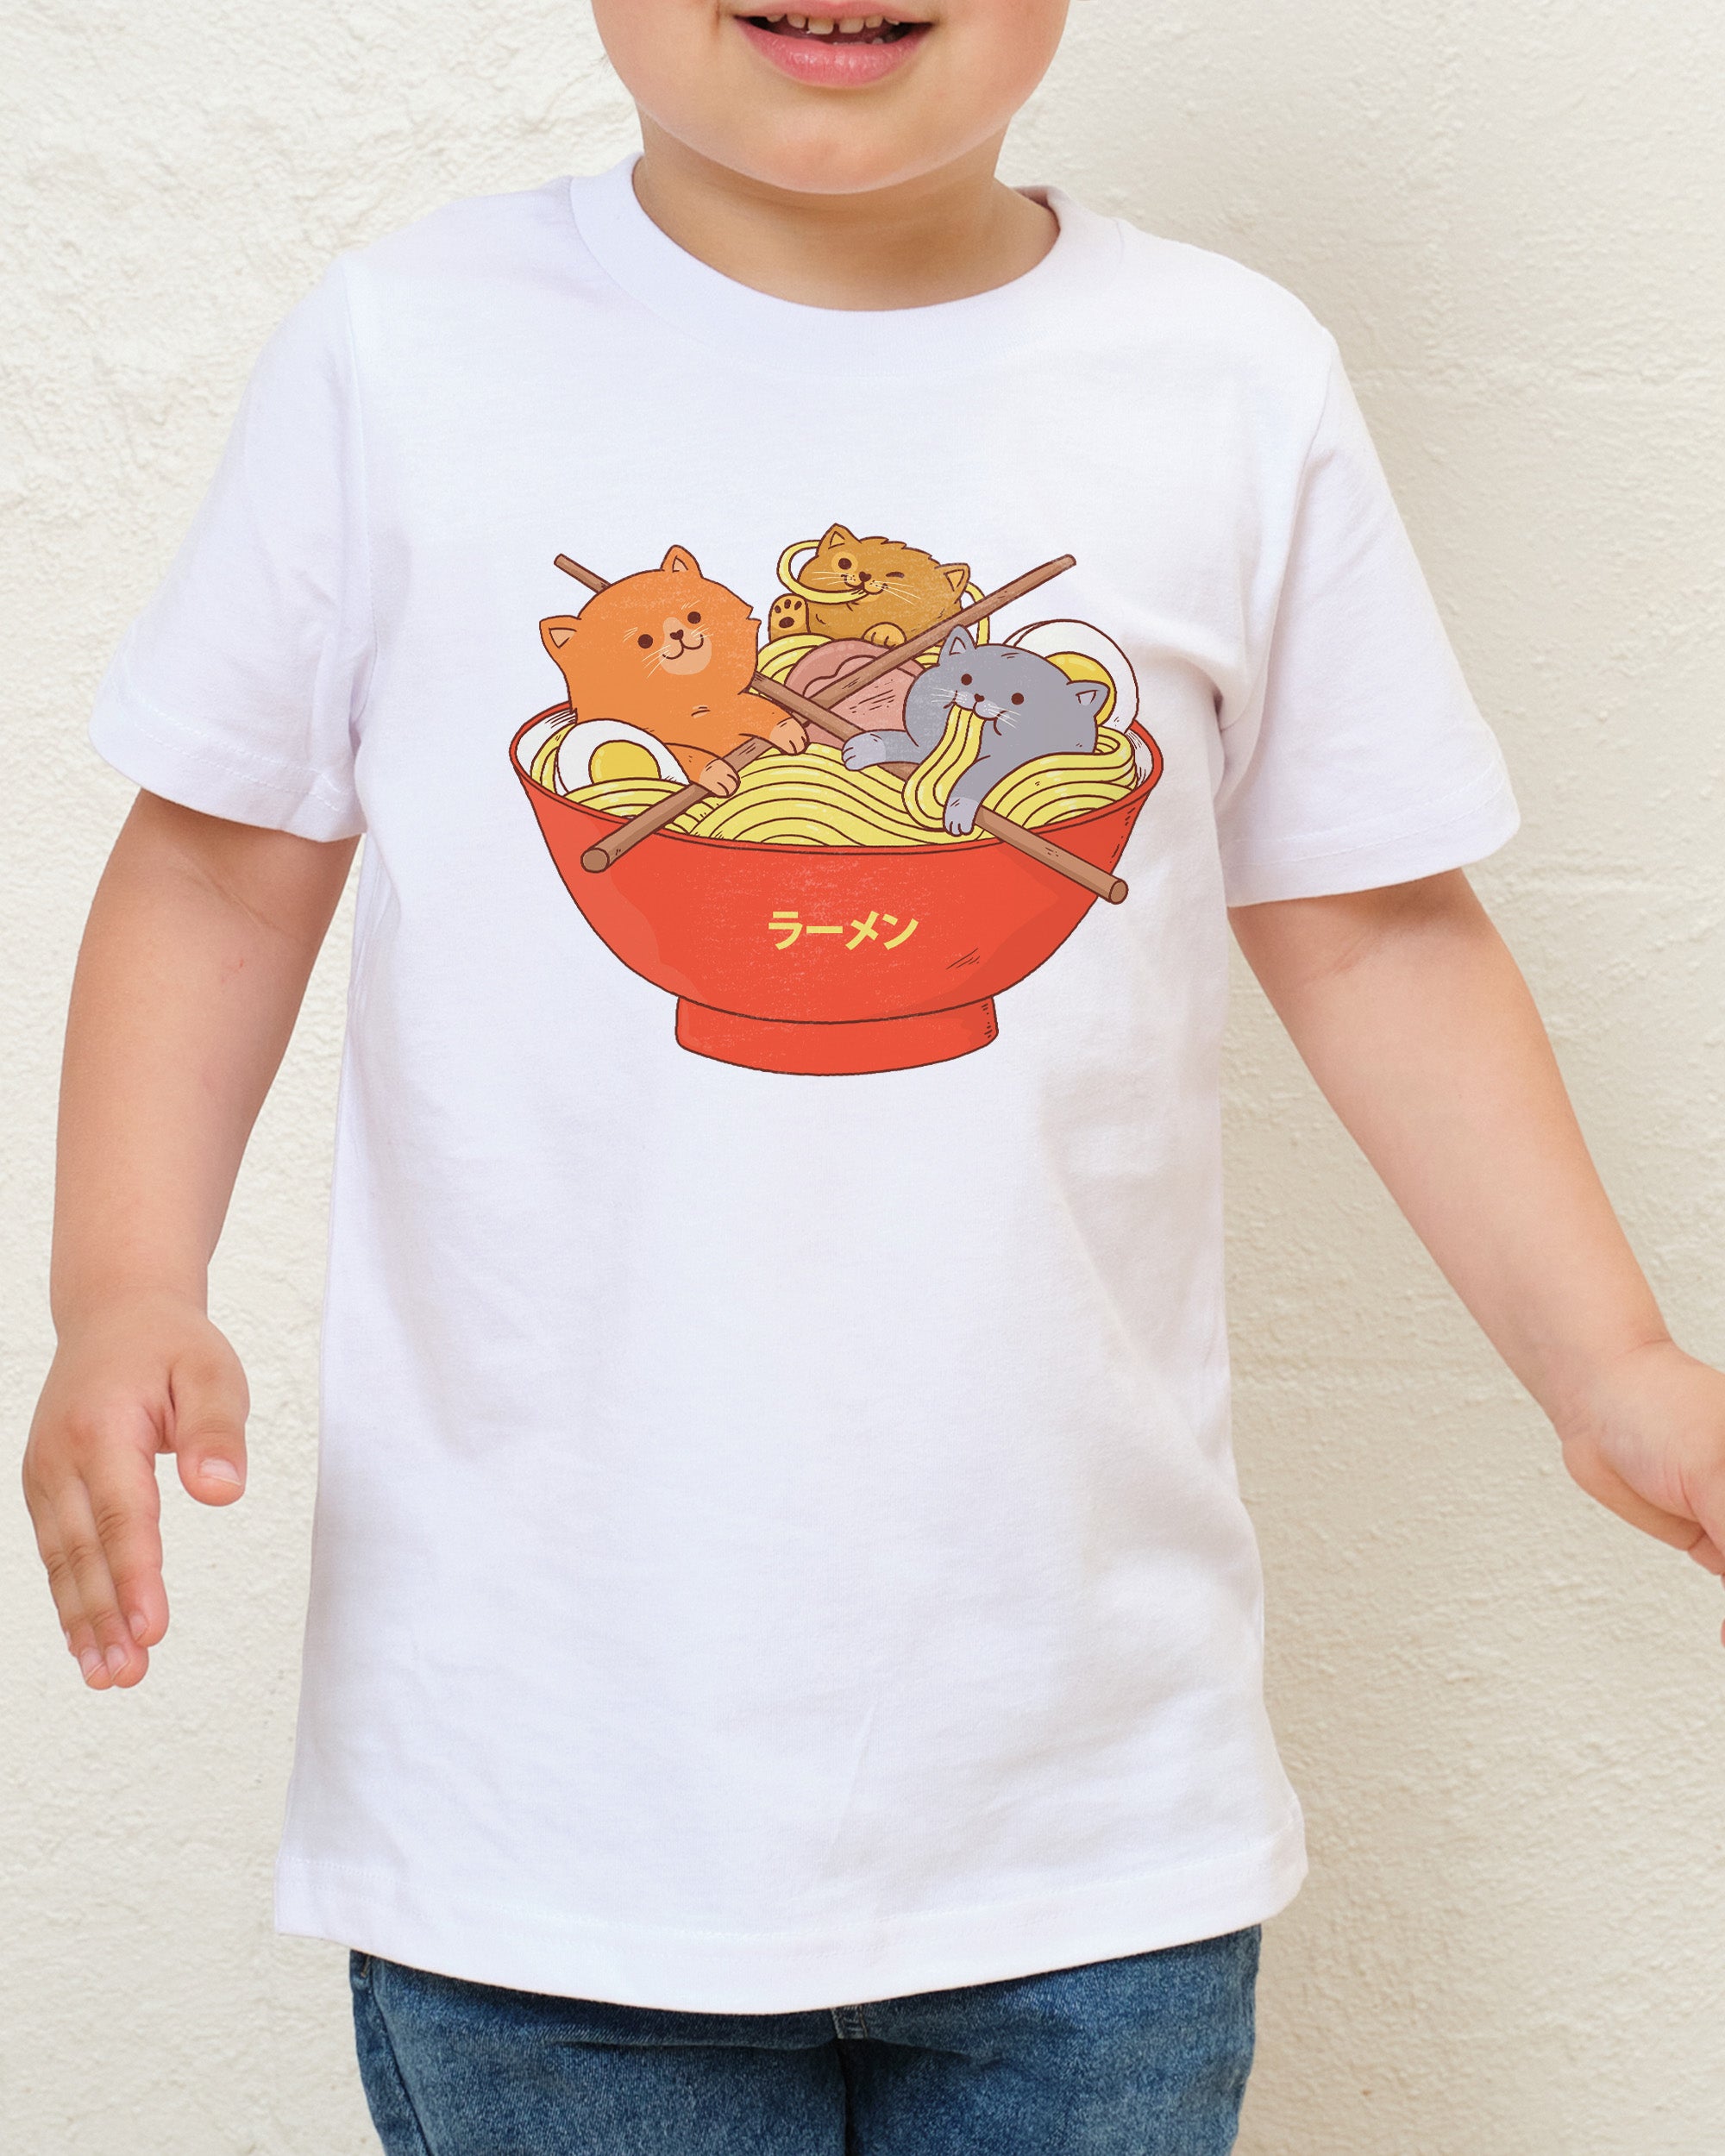 Ramen and Cats Kids T-Shirt